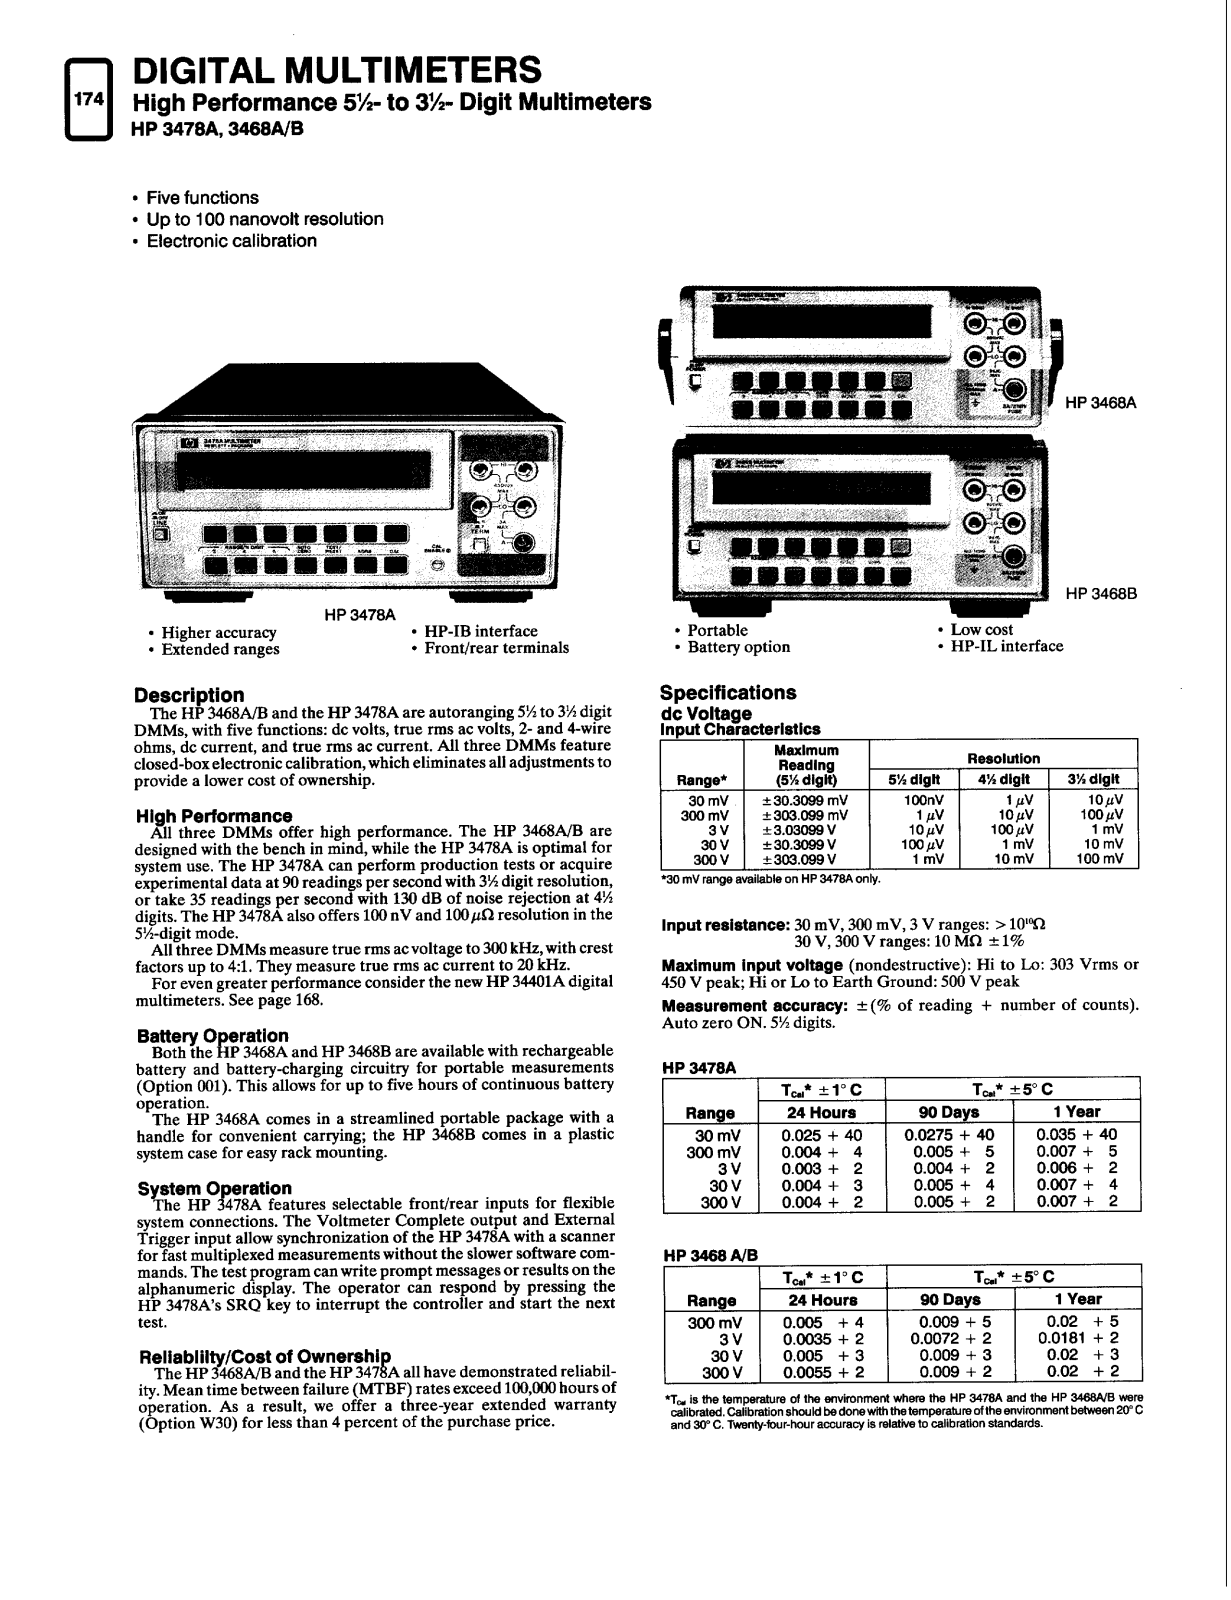 HP 3478a, 3468a, 3468b schematic